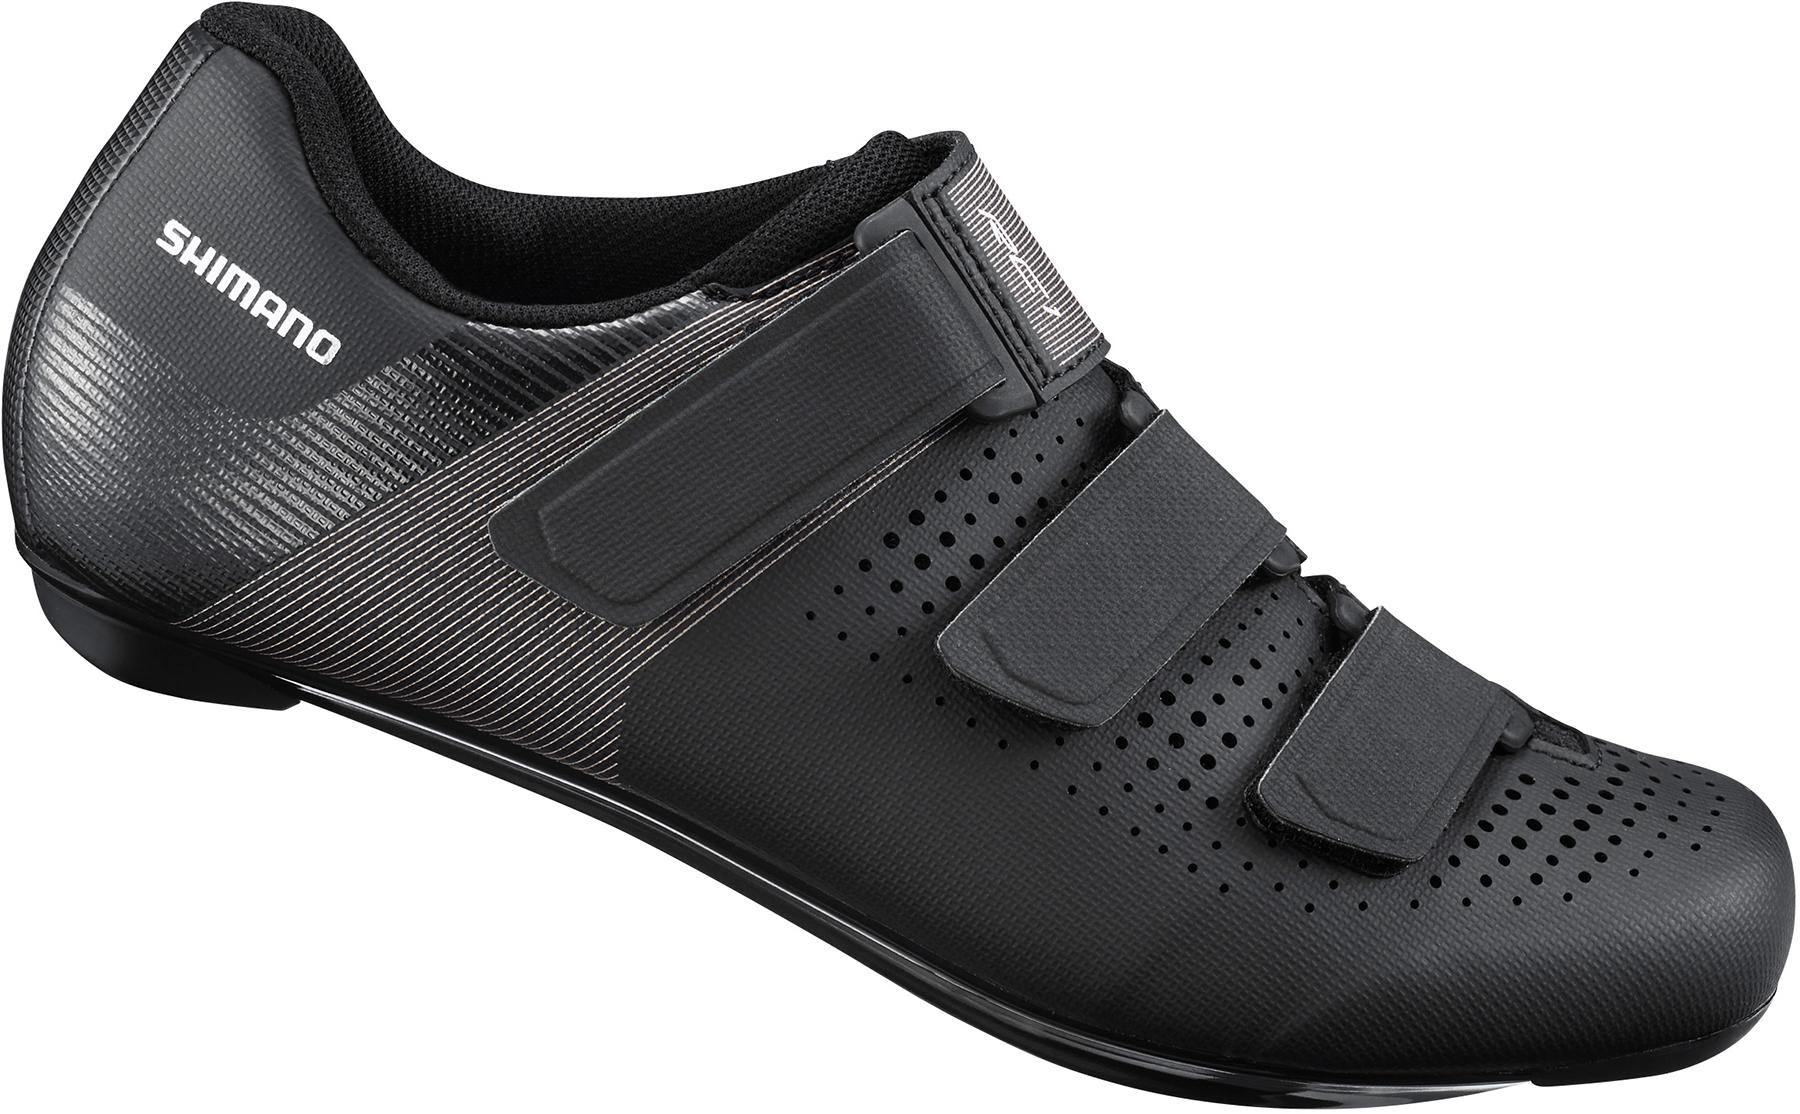 Shimano Womens Rc100w Road Shoes - Black